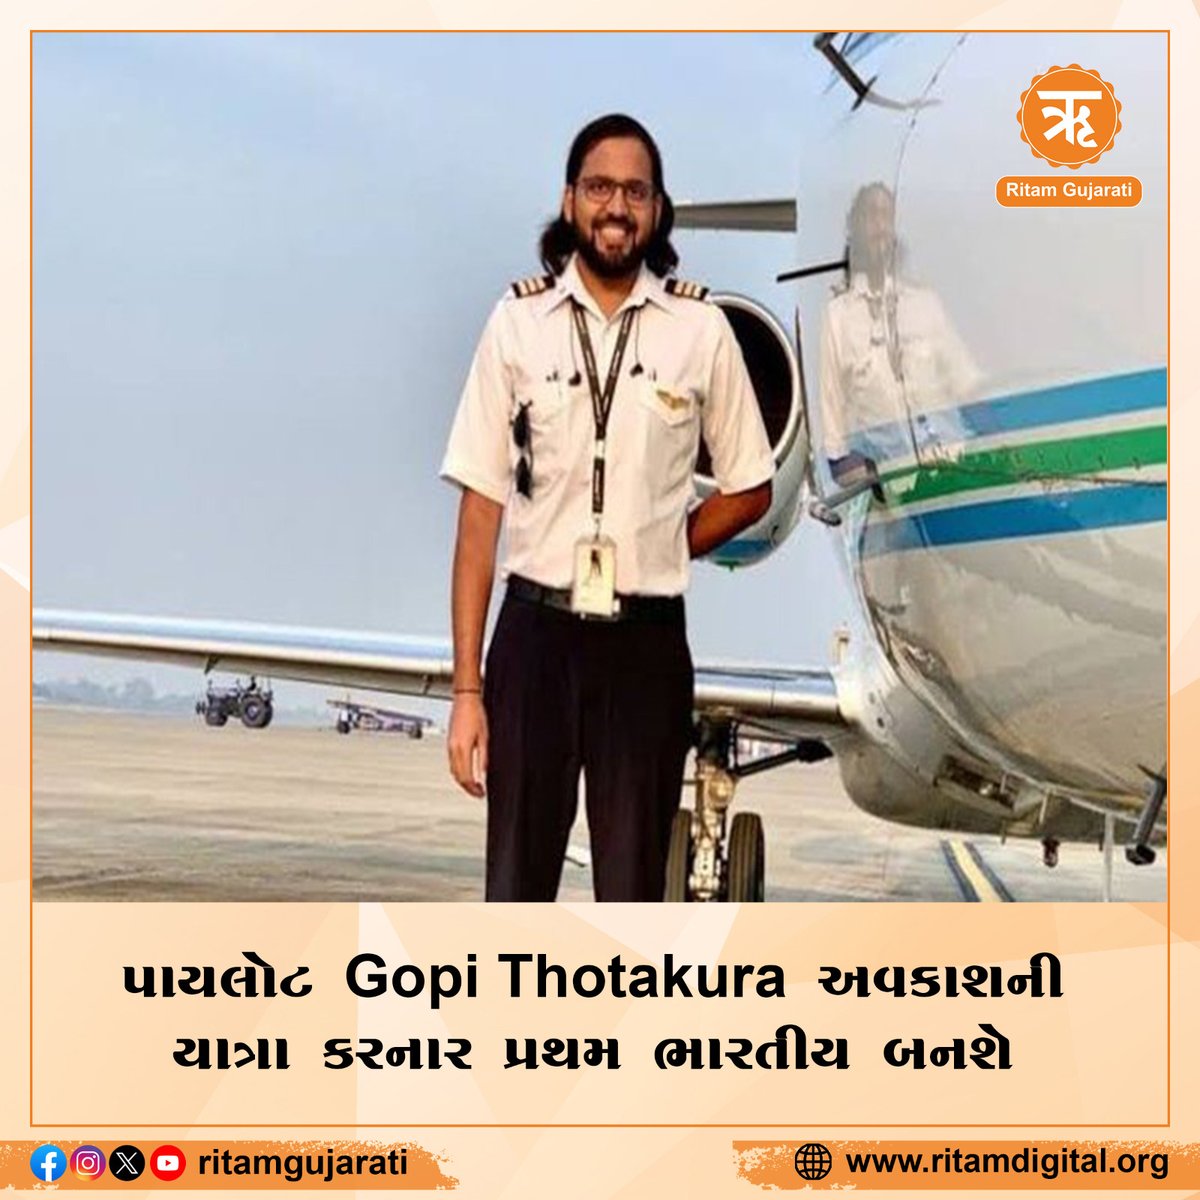 પાયલોટ Gopi Thotakura અવકાશની યાત્રા કરનાર પ્રથમ ભારતીય બનશે..  
#Gopithotakura #Space #Indian #IndianPilot #SpaceTourism